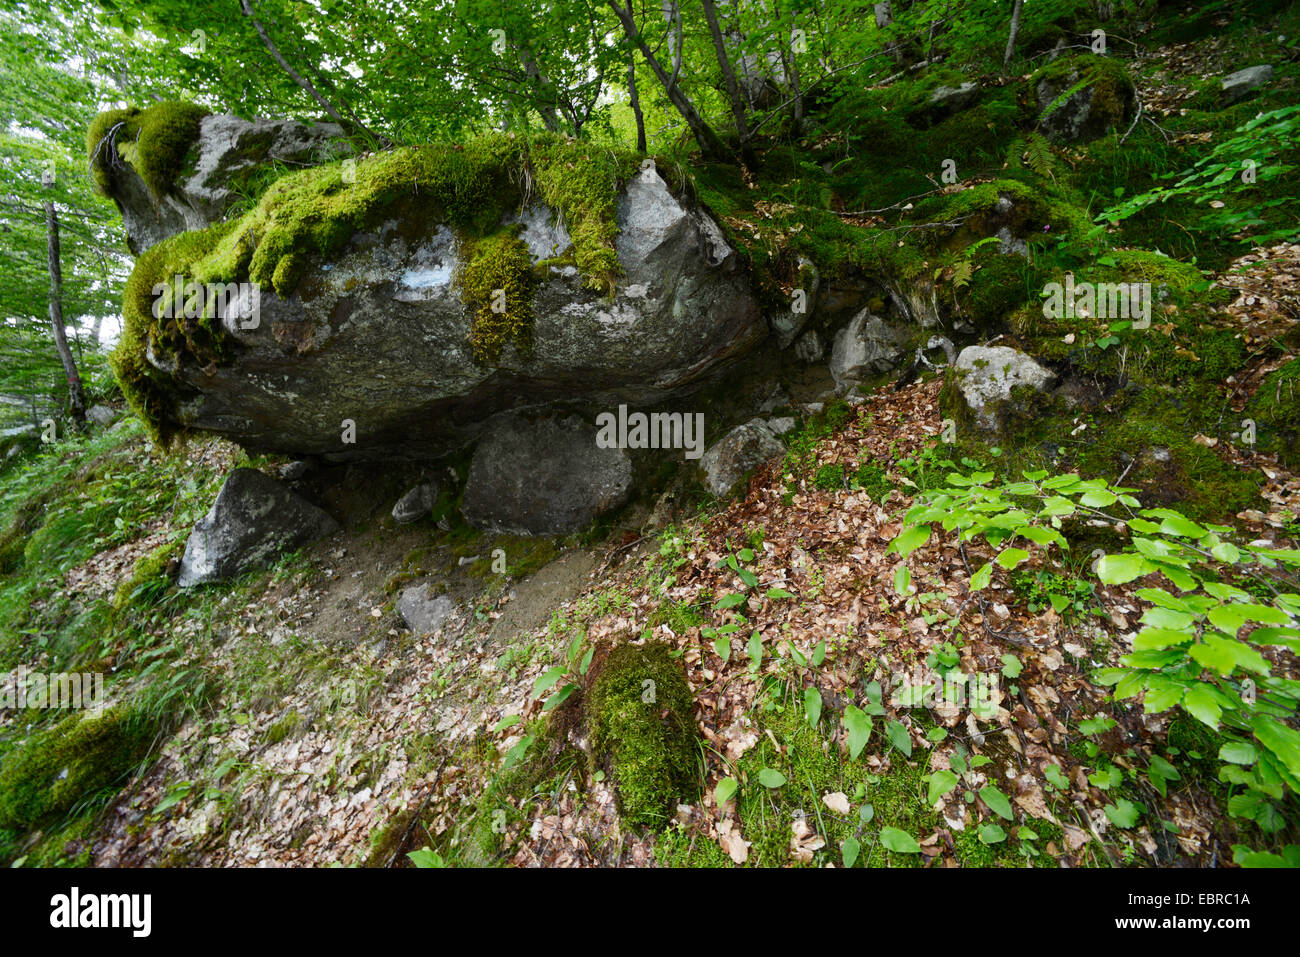 Roche de granit dans une forêt, France, Corse, Monte dAEOro Banque D'Images